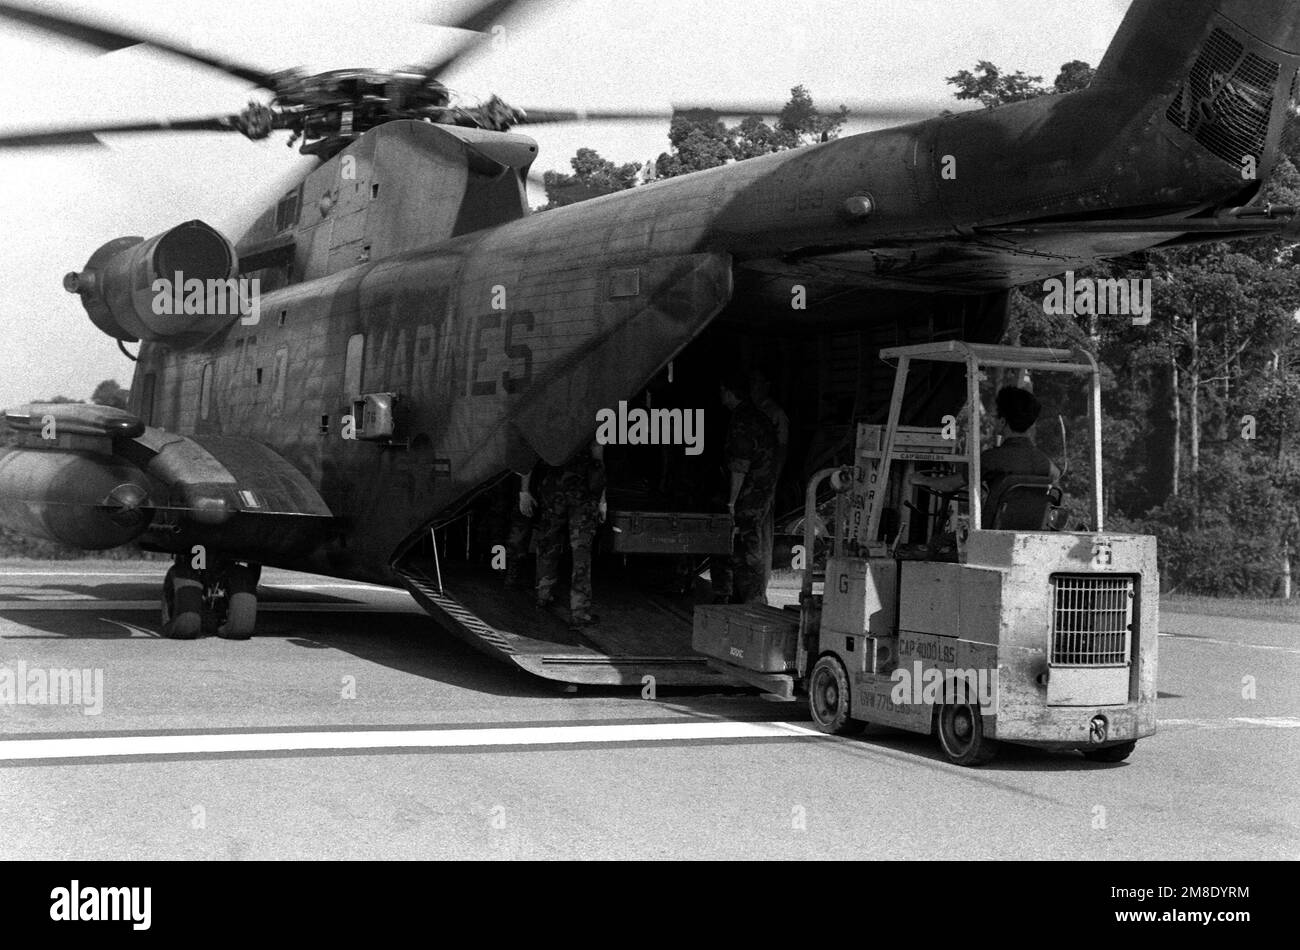 La Marina de los Estados Unidos descarga suministros desde un helicóptero CH-53D Sea Stallion durante los esfuerzos de rescate y recuperación en una zona que sufrió daños por terremotos. Base: Cabanatuan Ciudad País: Filipinas Foto de stock